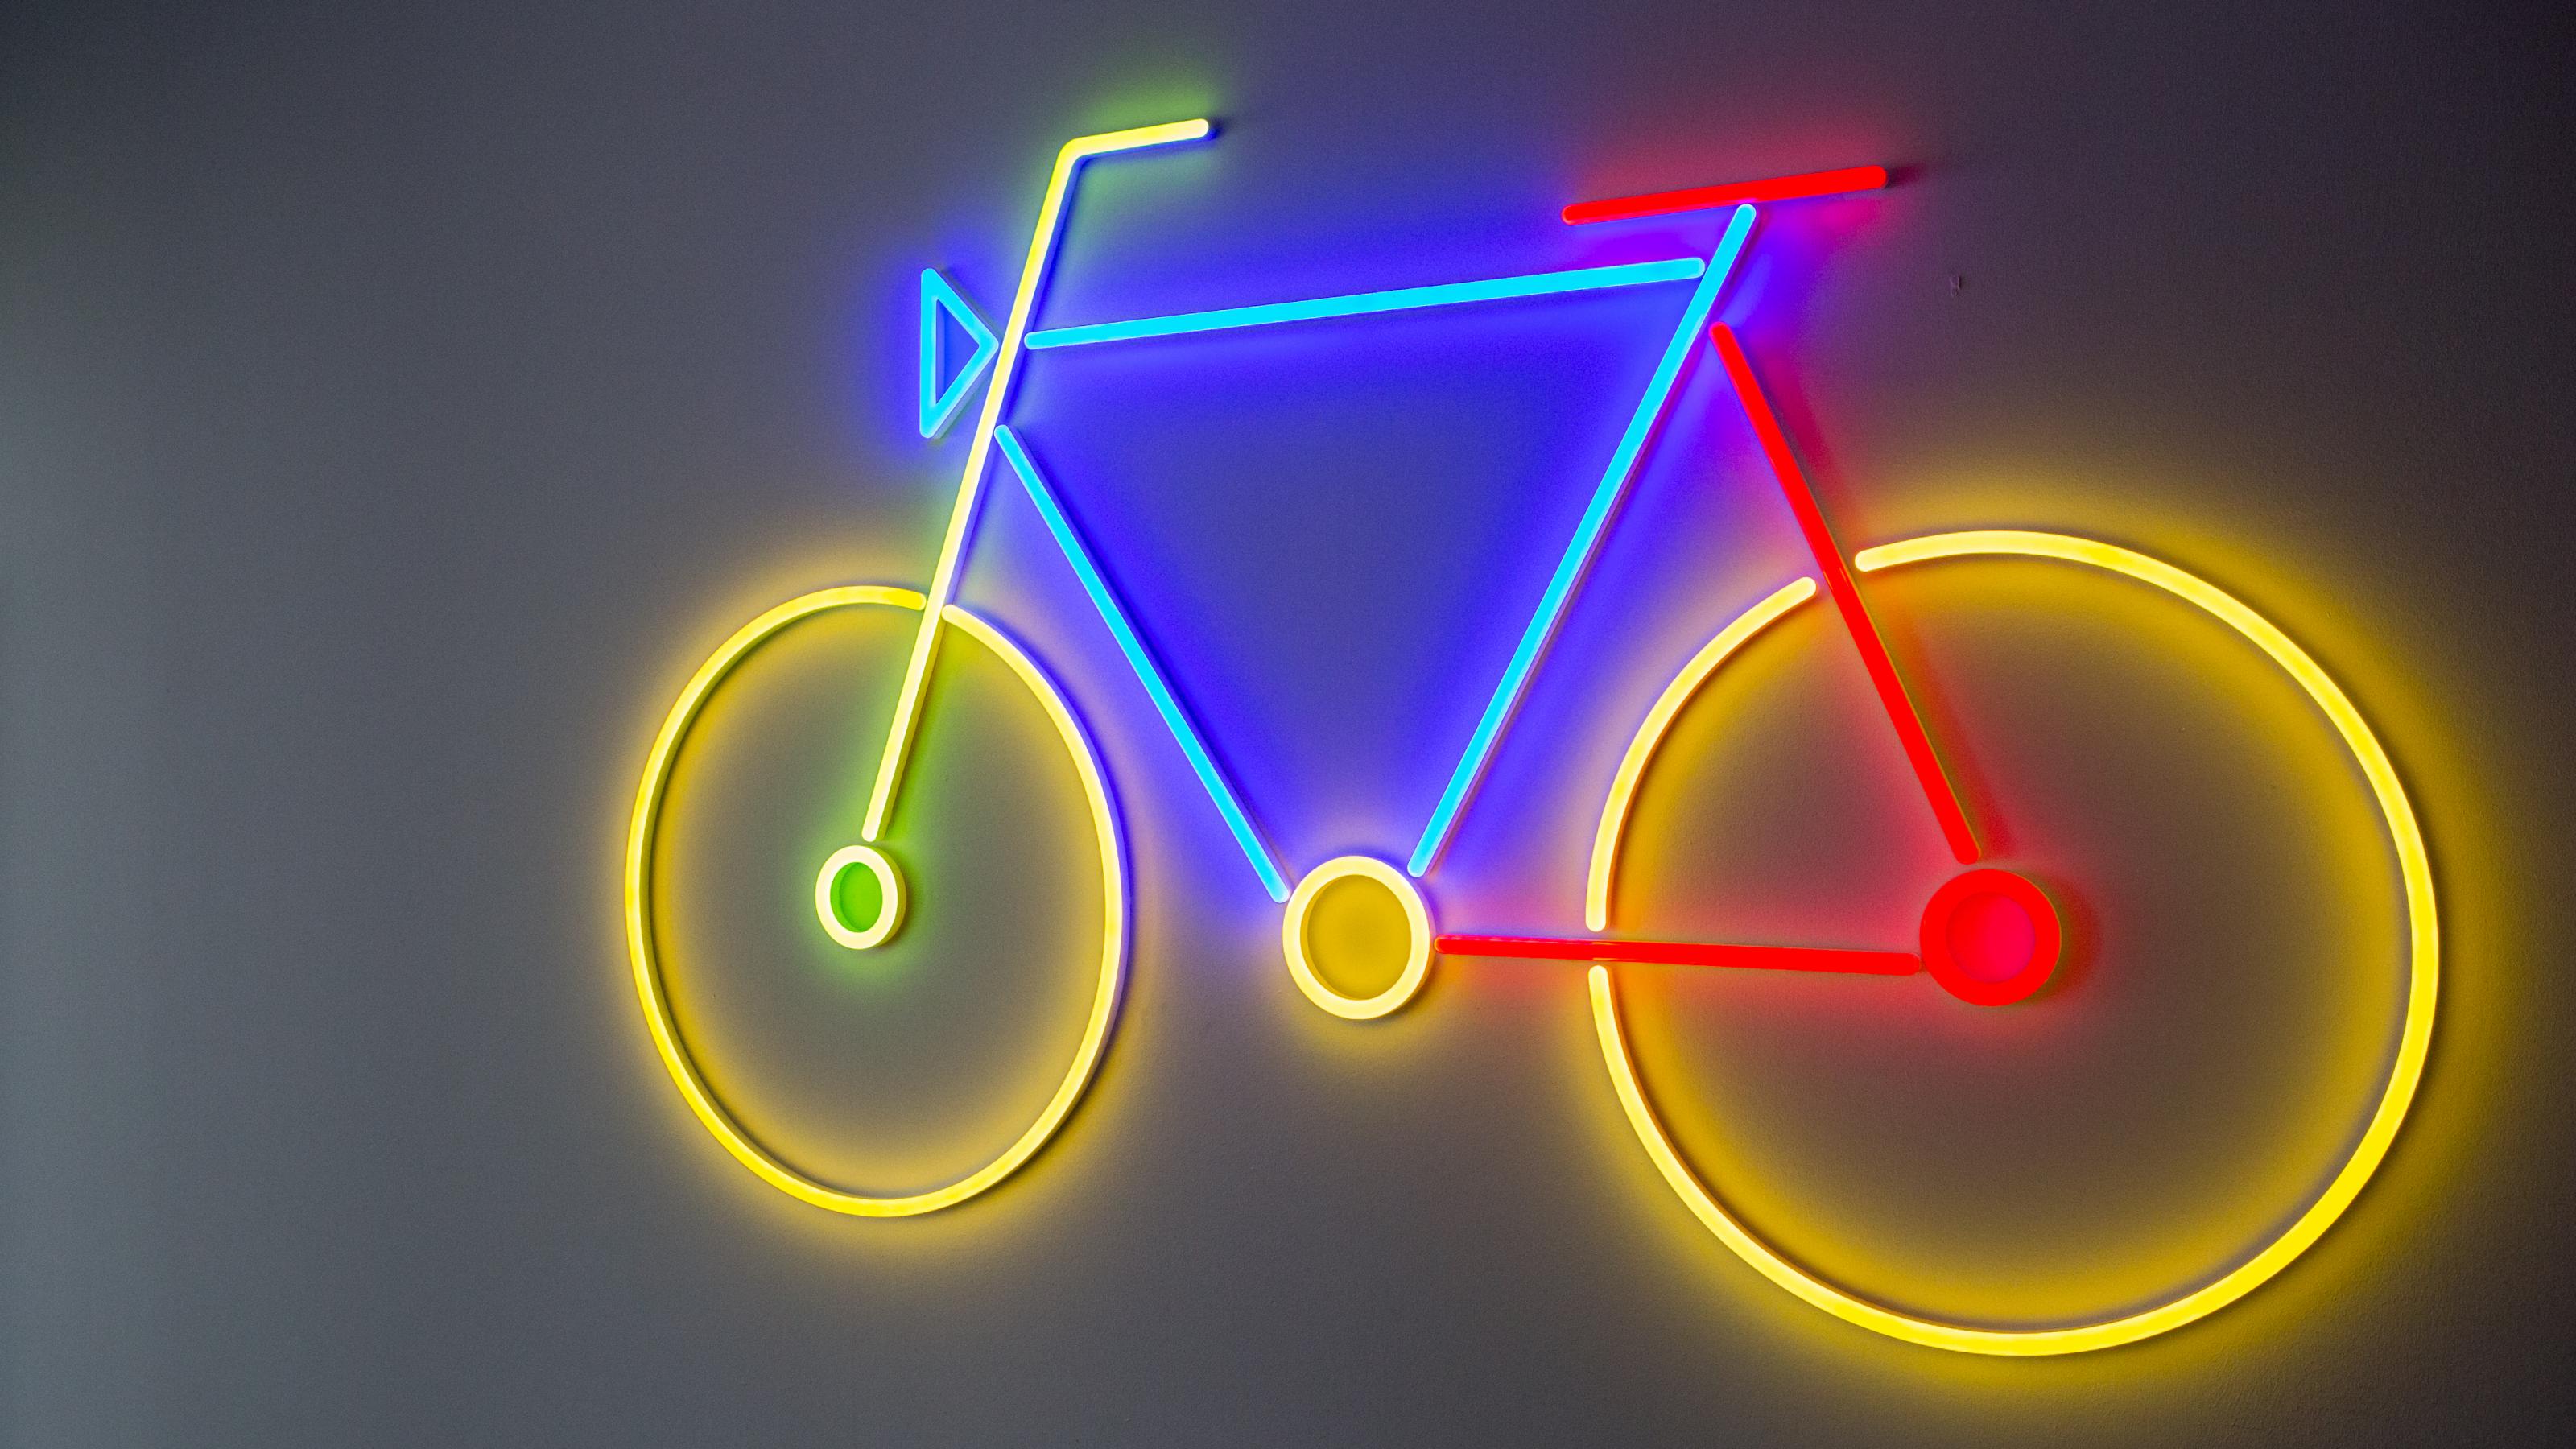 Stilisiertes Fahrrad, das in Neonfarben gelb, rot, blau und grün vor einem dunklen Hintergrund leuchtet.